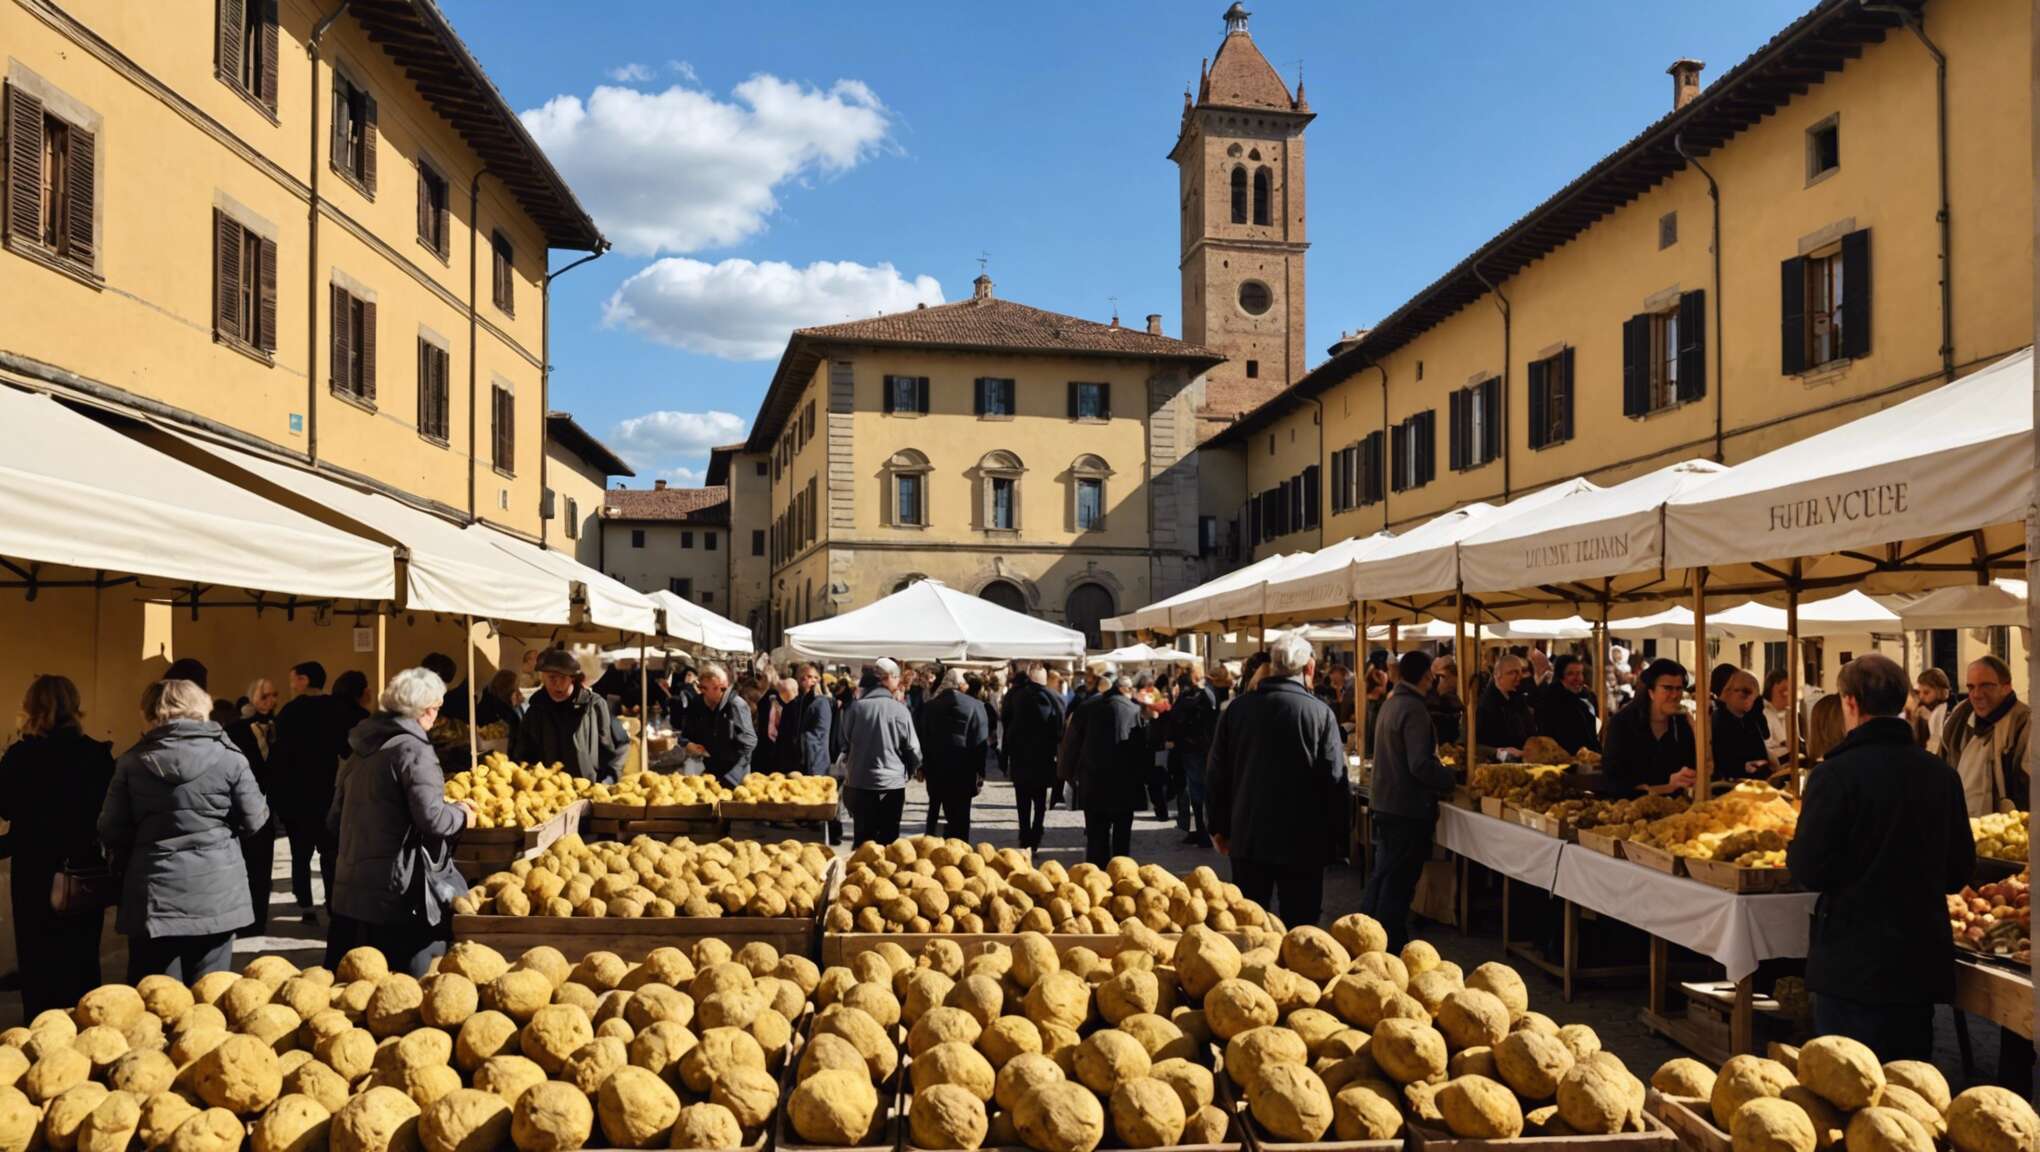 San miniato et florence : capitales toscanes de la truffe blanche